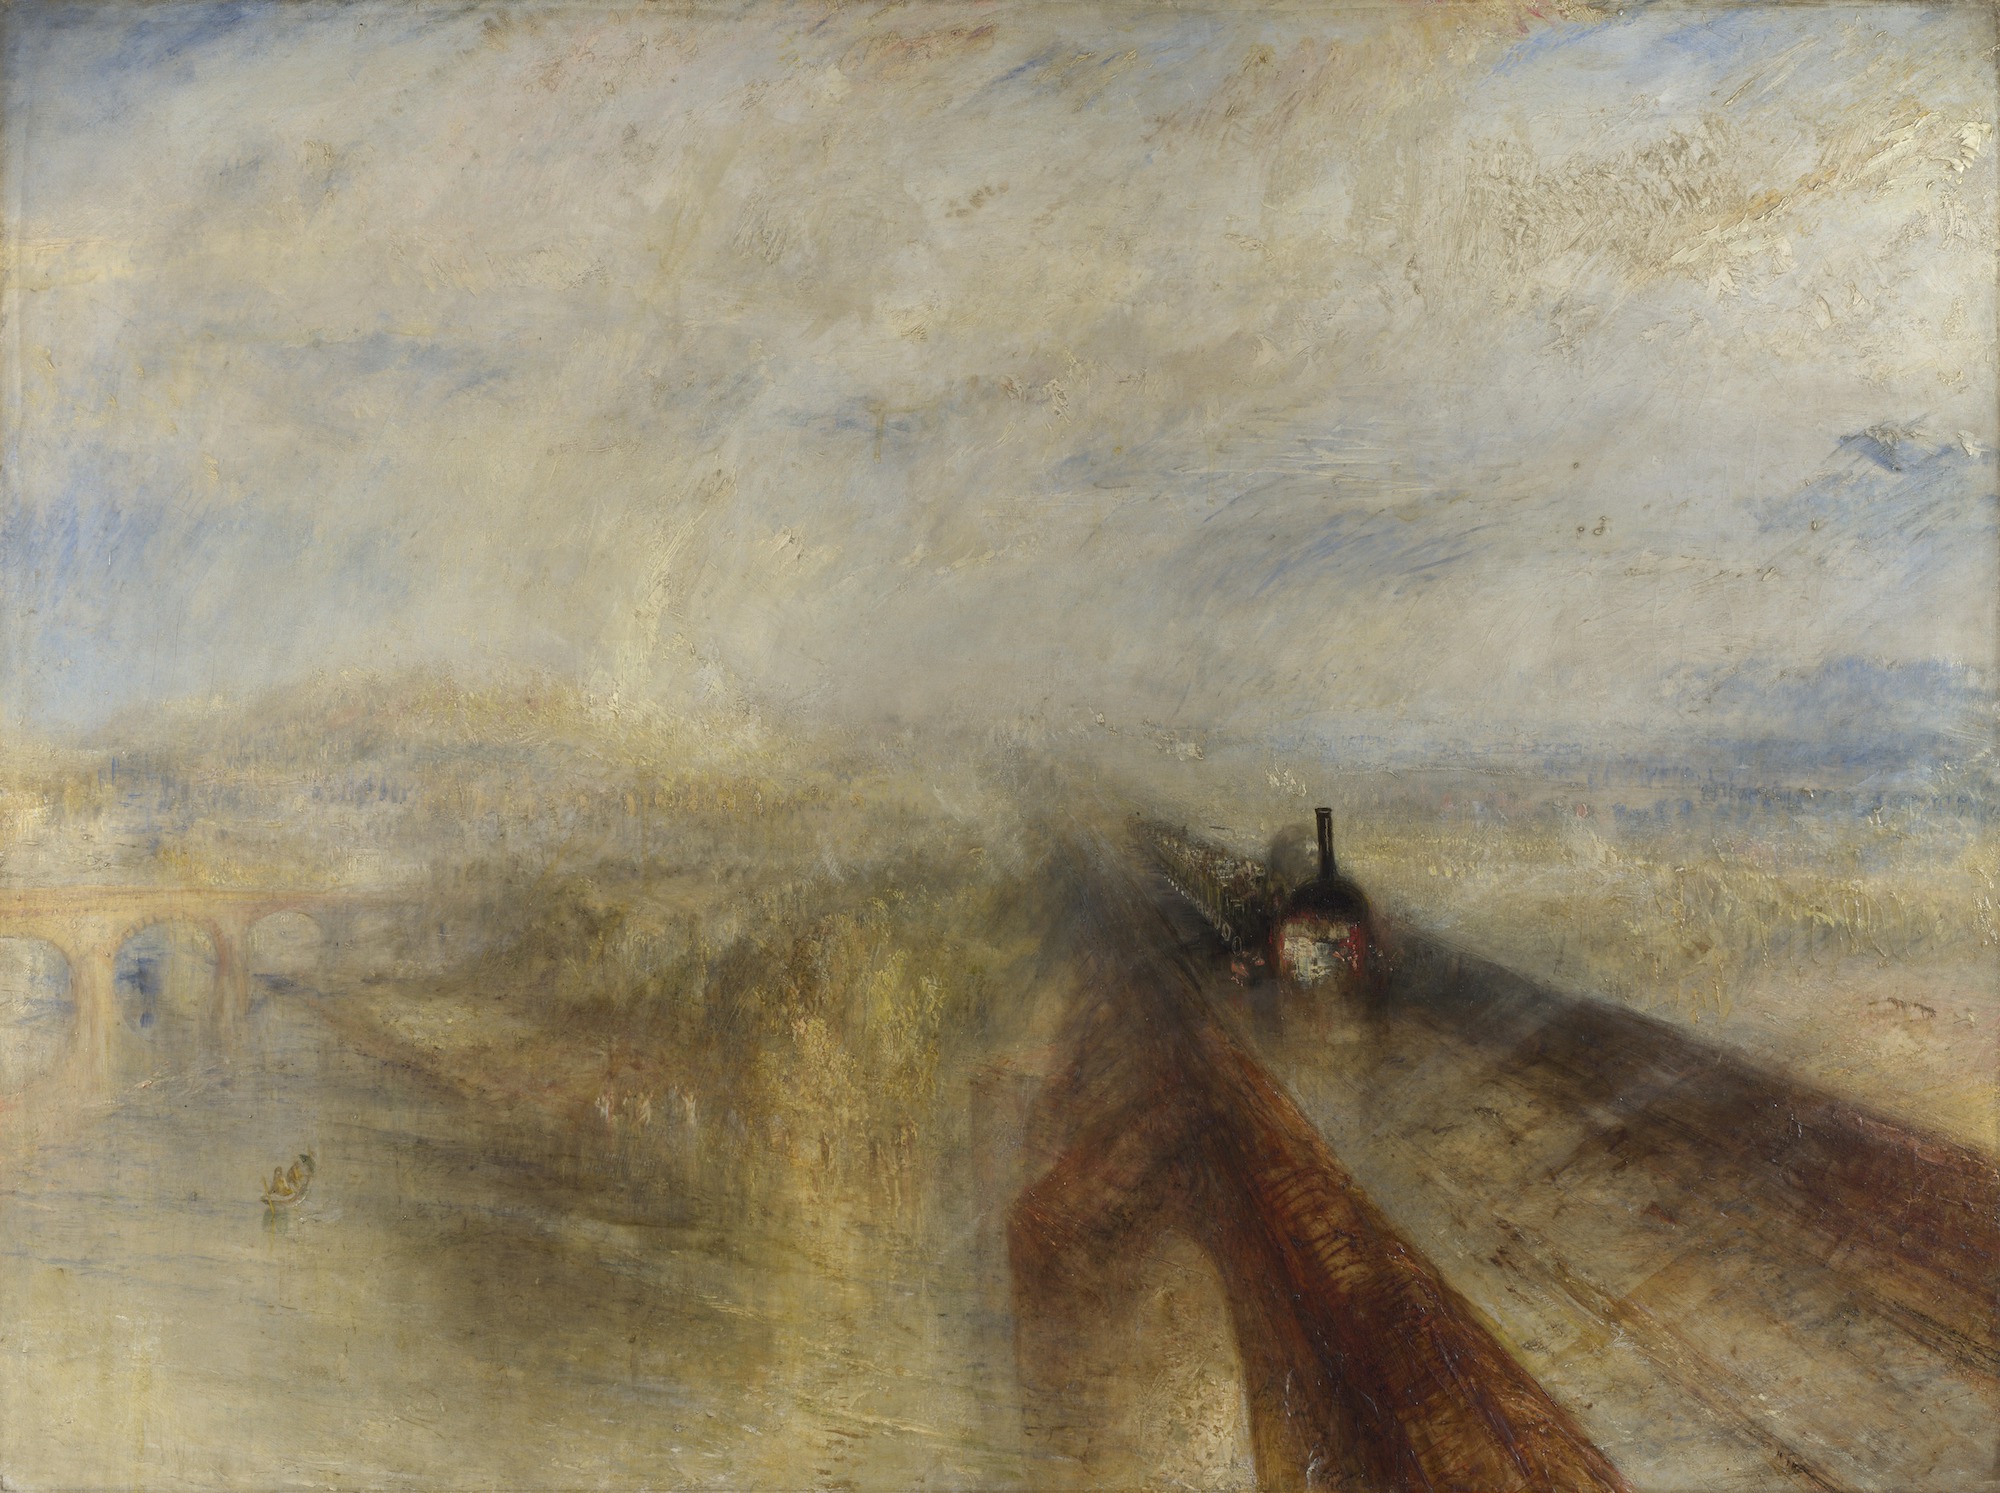 Lluvia, vapor y velocidad - El gran ferrocarril del oeste by Joseph Mallord William Turner - 1844 Galería Nacional